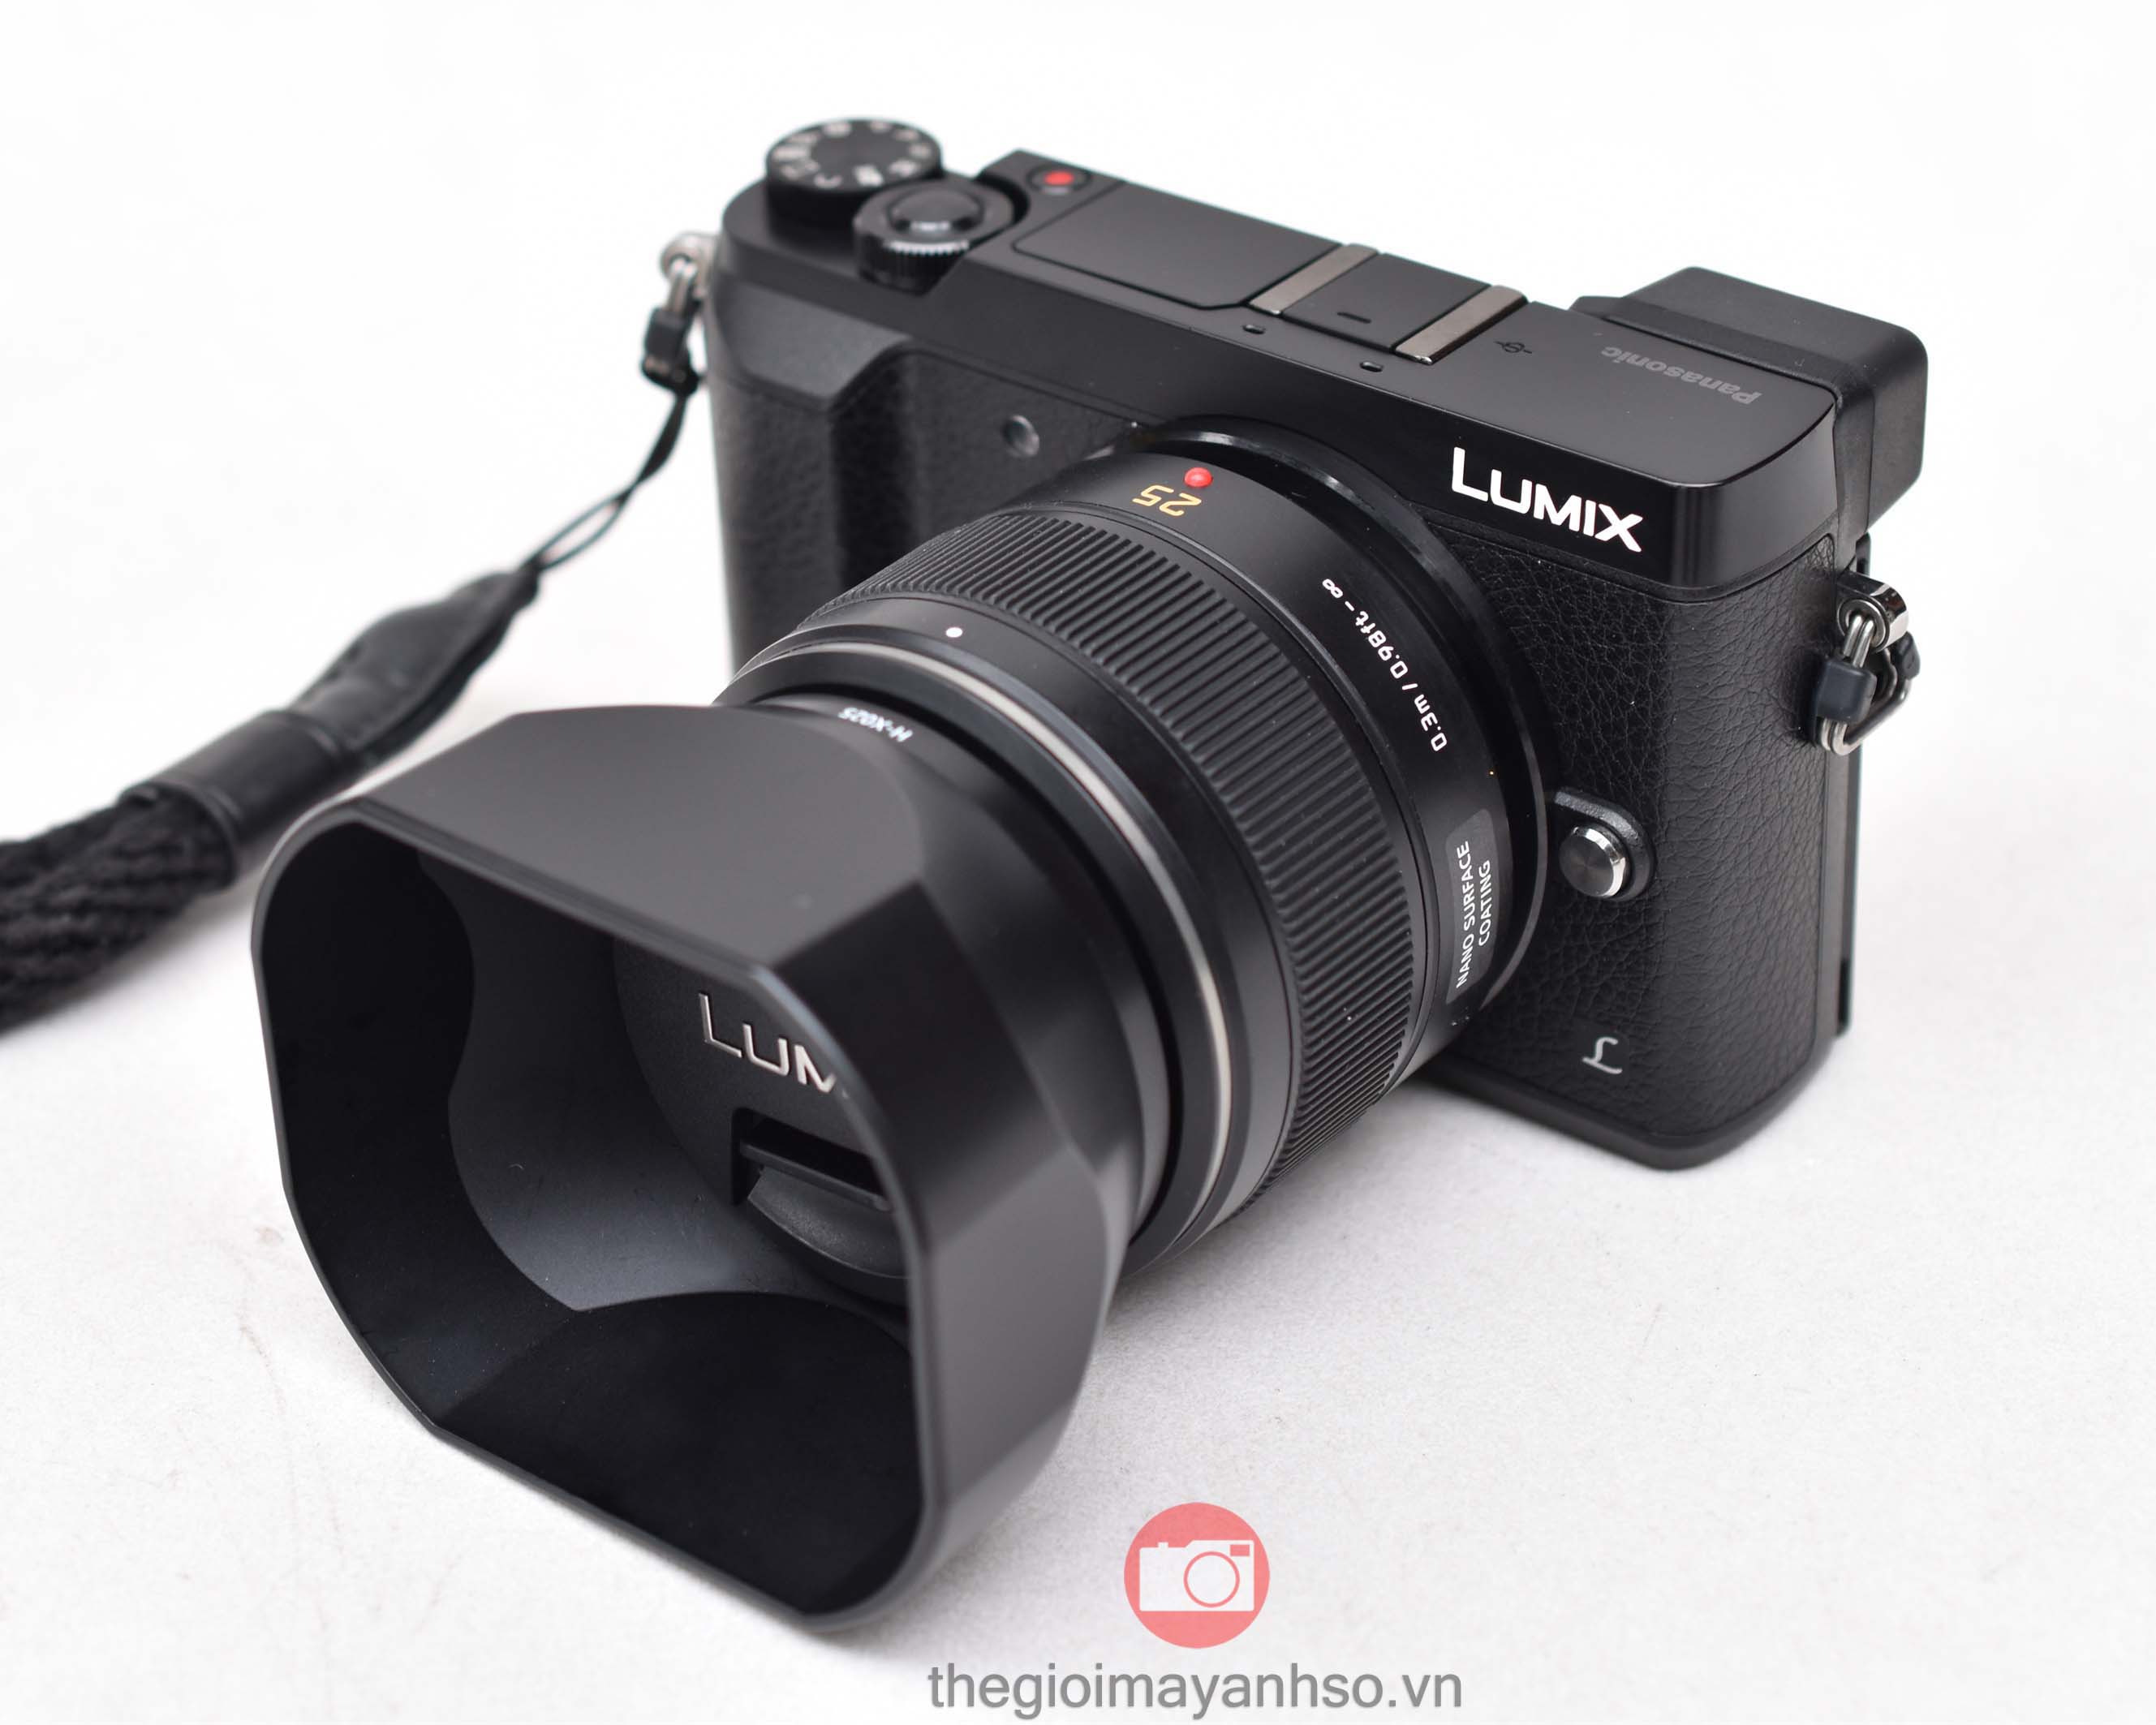 Ống kính Lumix DG Summilux 25mm f/1.4 ASPH Leica Panasonic